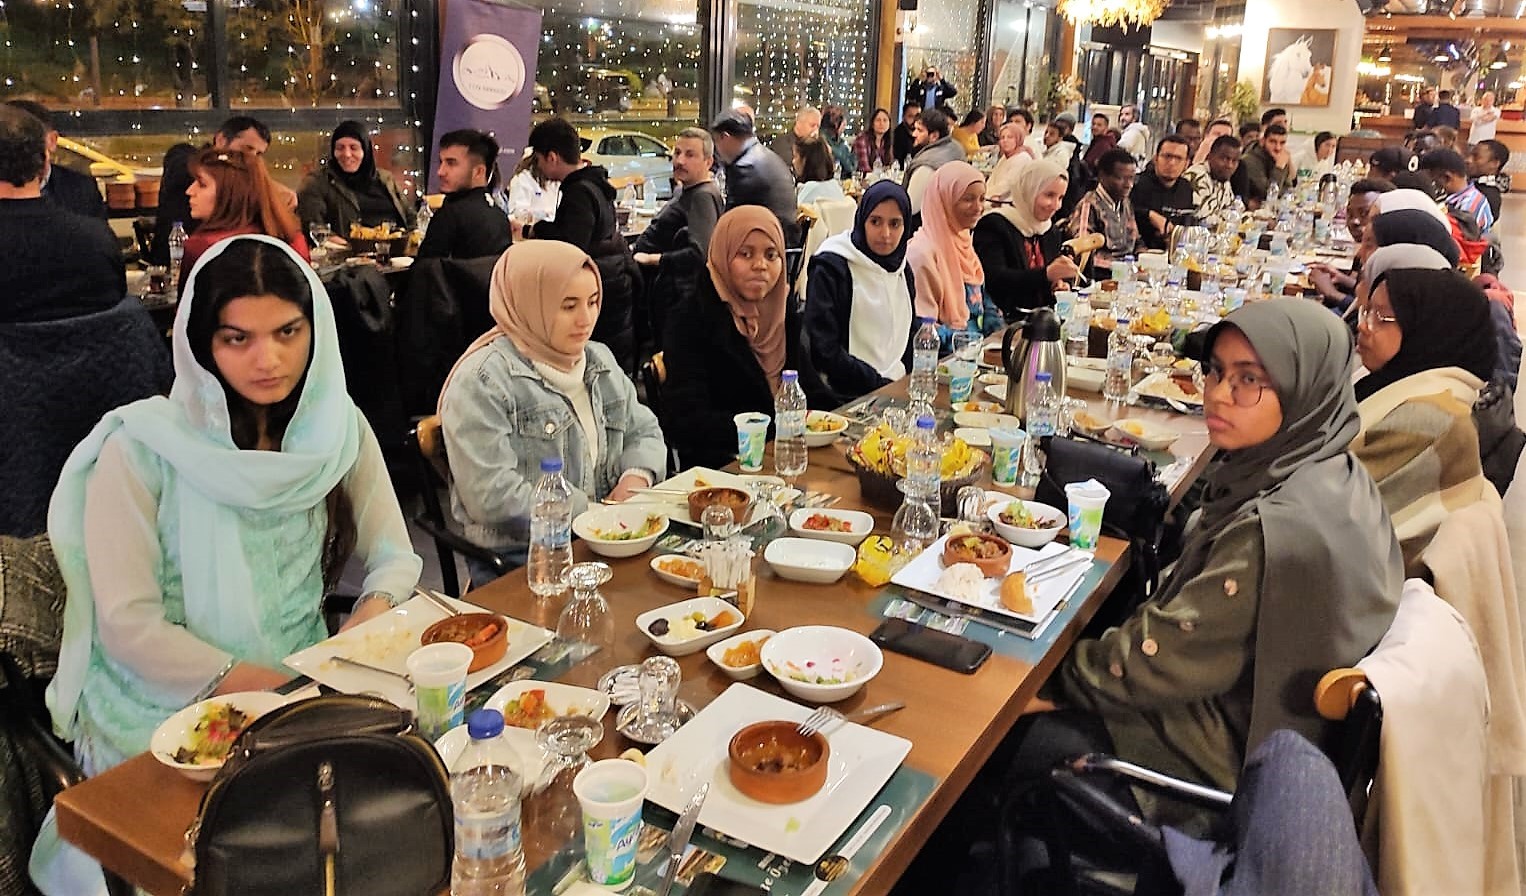 Eğitim hayatlarını Denizli’de sürdüren 20 ayrı ülkeden 90 öğrenci, Ramazan ayı dolayısıyla düzenlenen iftar yemeğinde bir araya geldi.